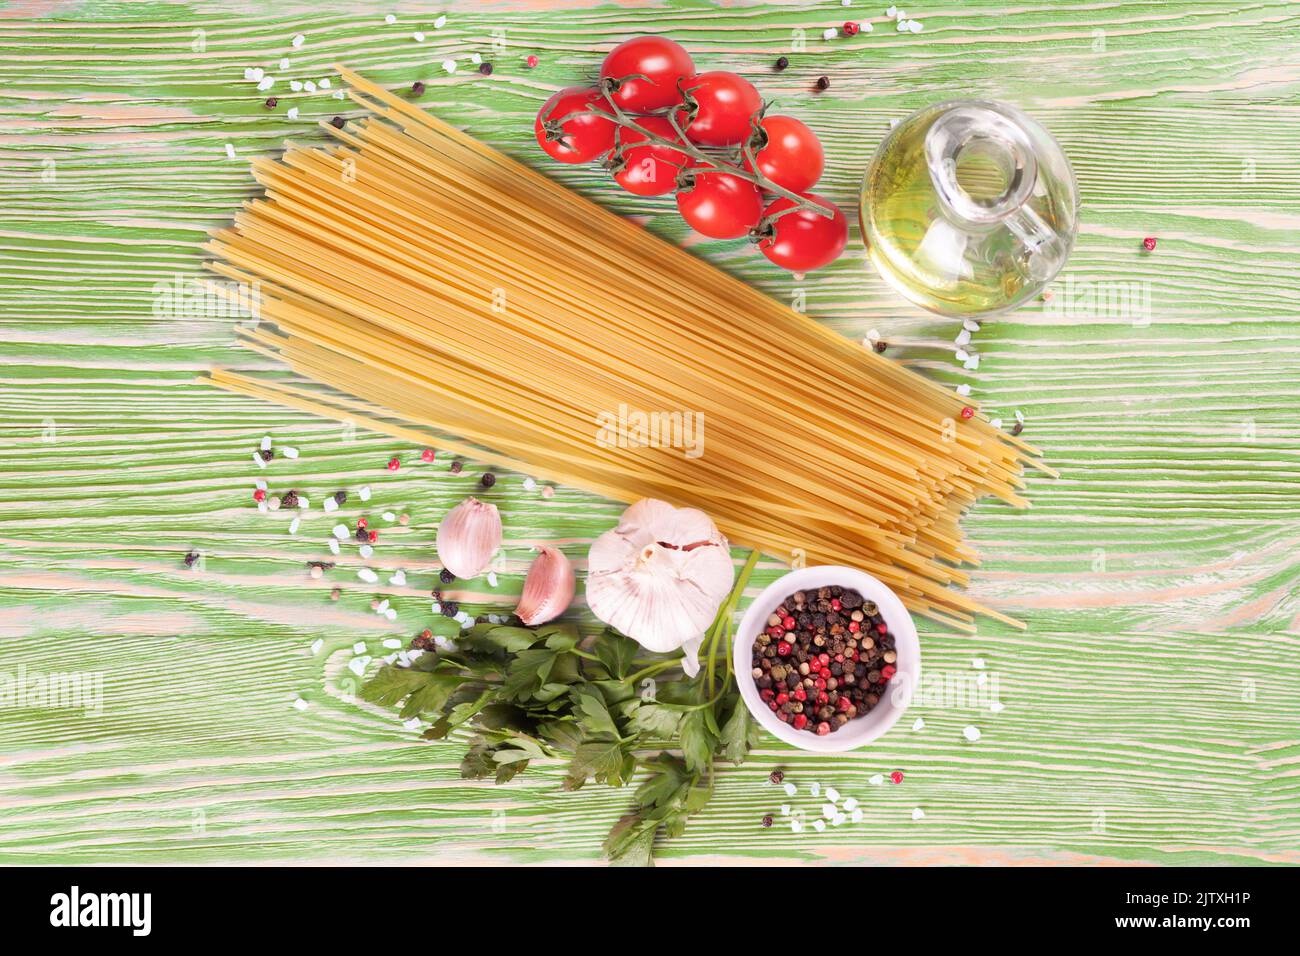 Pasta und Gargut auf grüner Holzoberfläche. Spaghetti, Tomaten, Olivenöl, Gewürzen, Knoblauch und Petersilie. Italienisches Küchenkonzept. Draufsicht, FLA Stockfoto